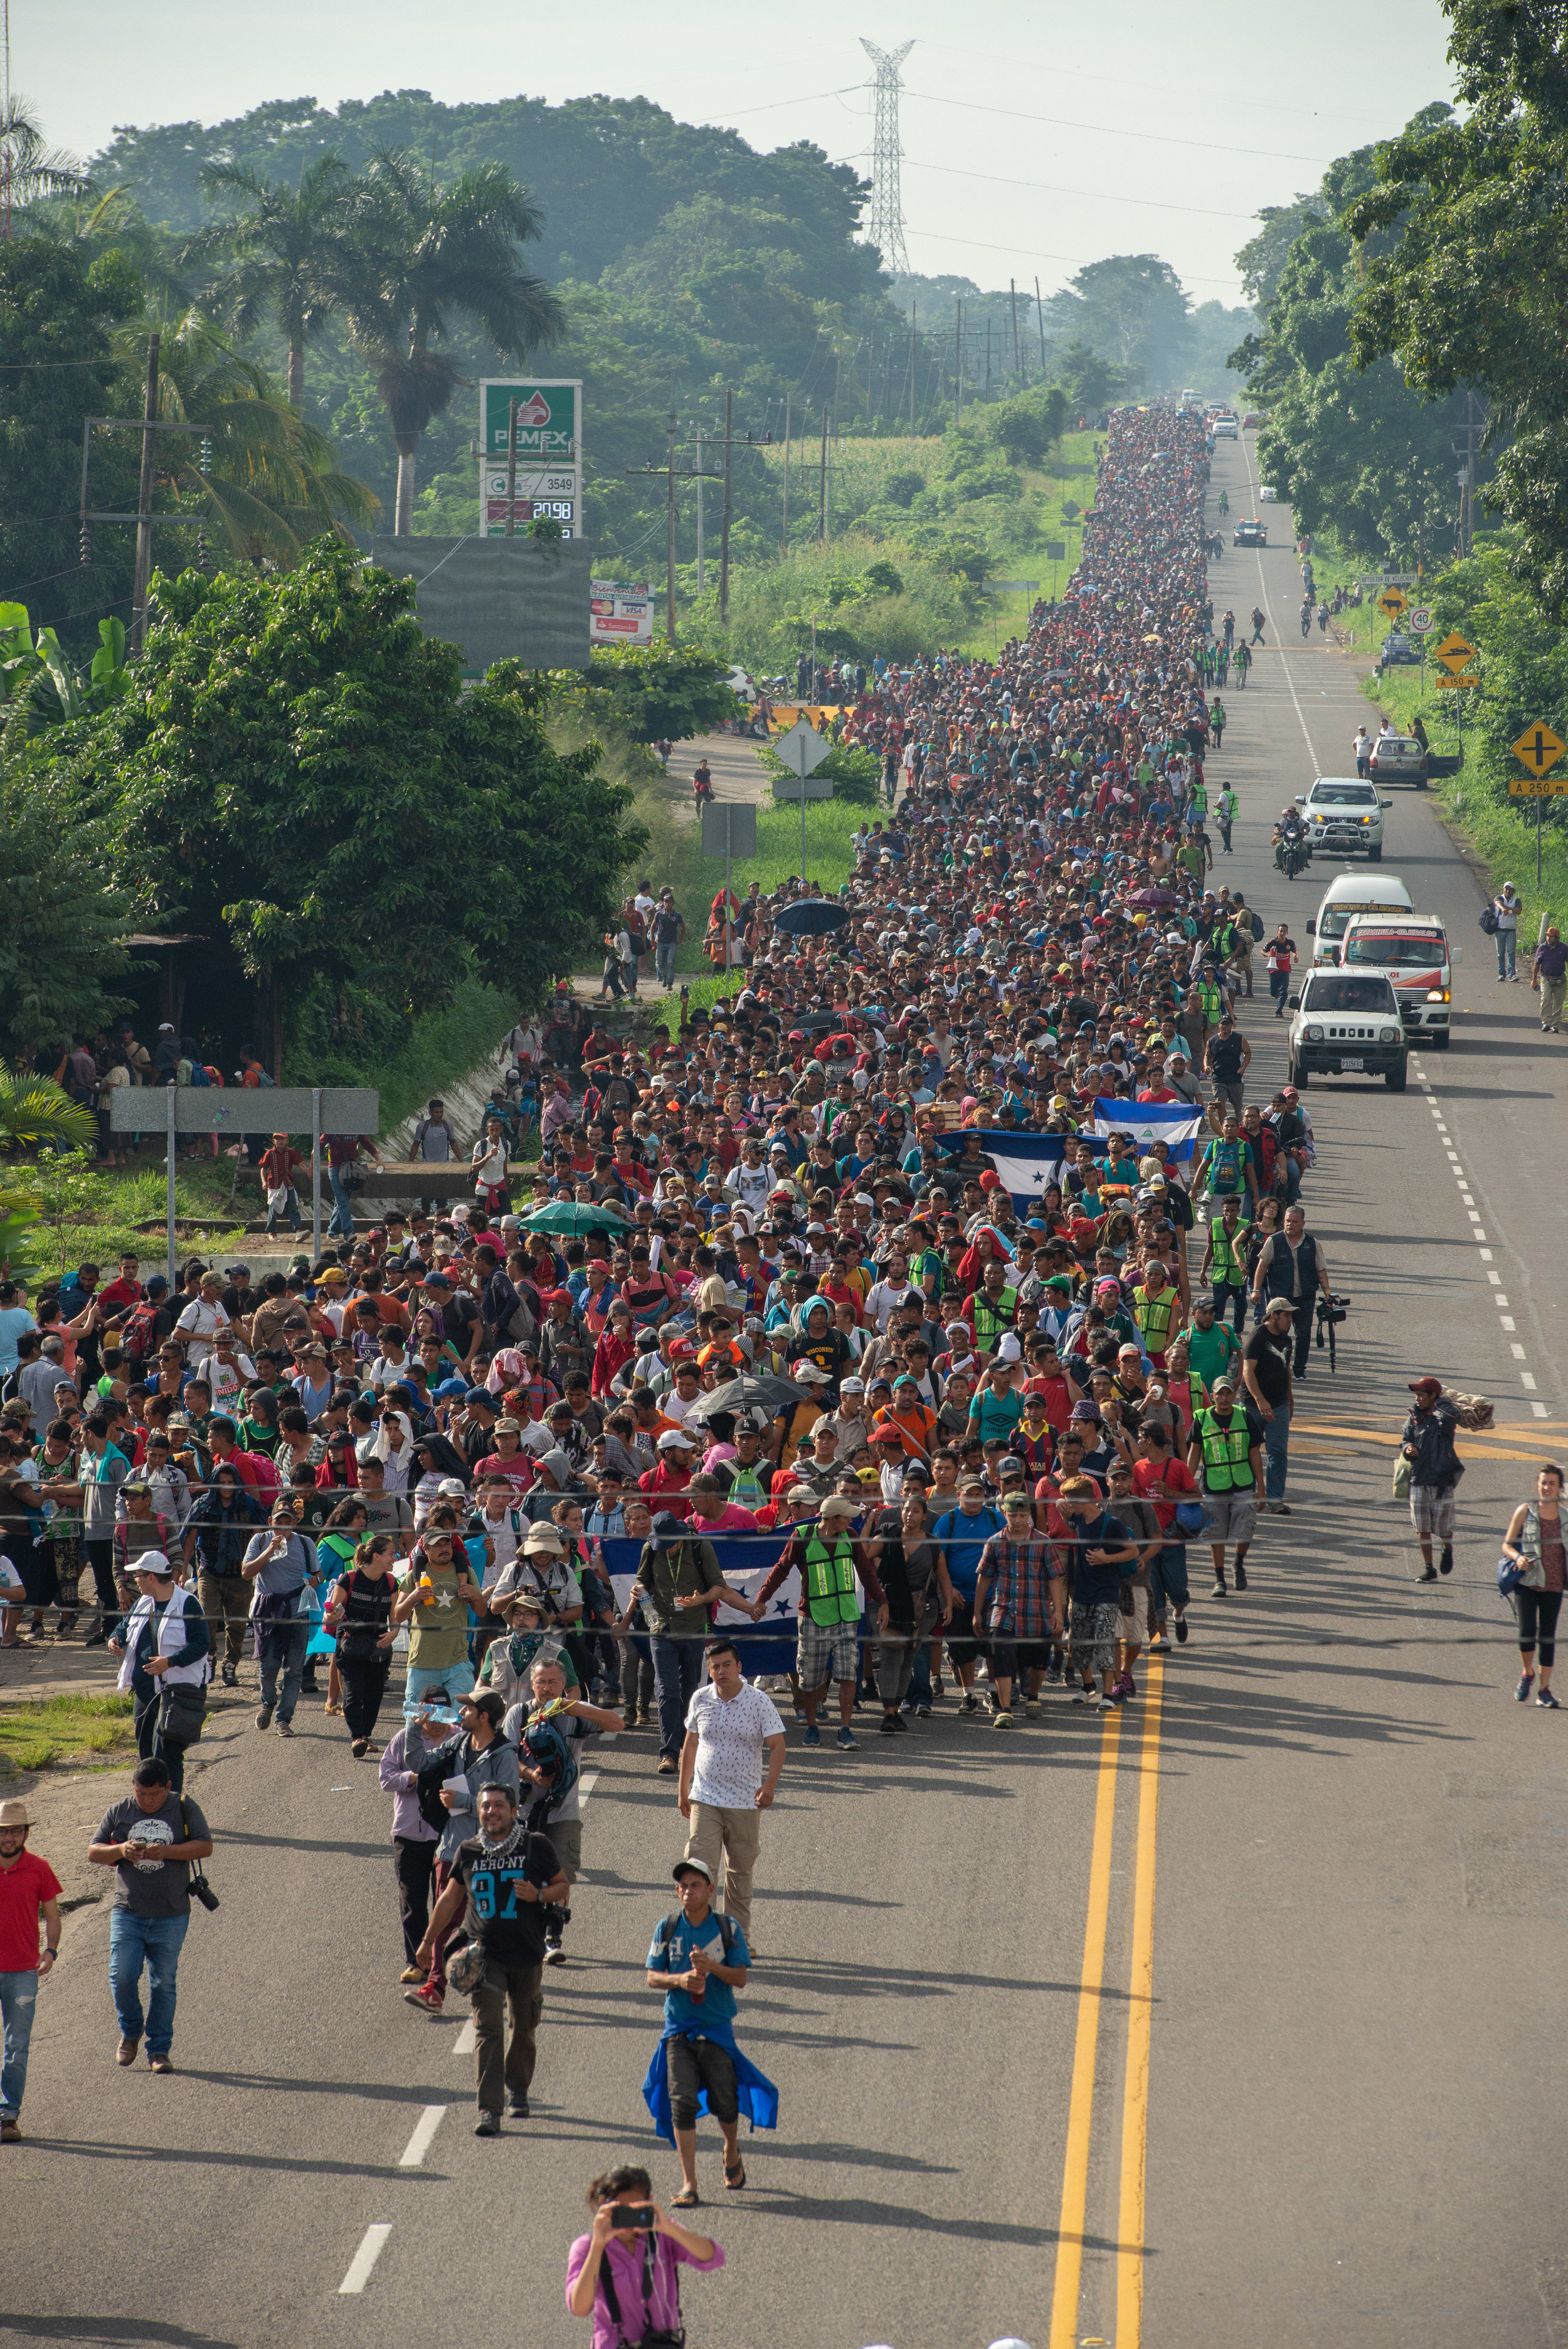  La caravana marcha en México. | The caravan marches in Mexico.  